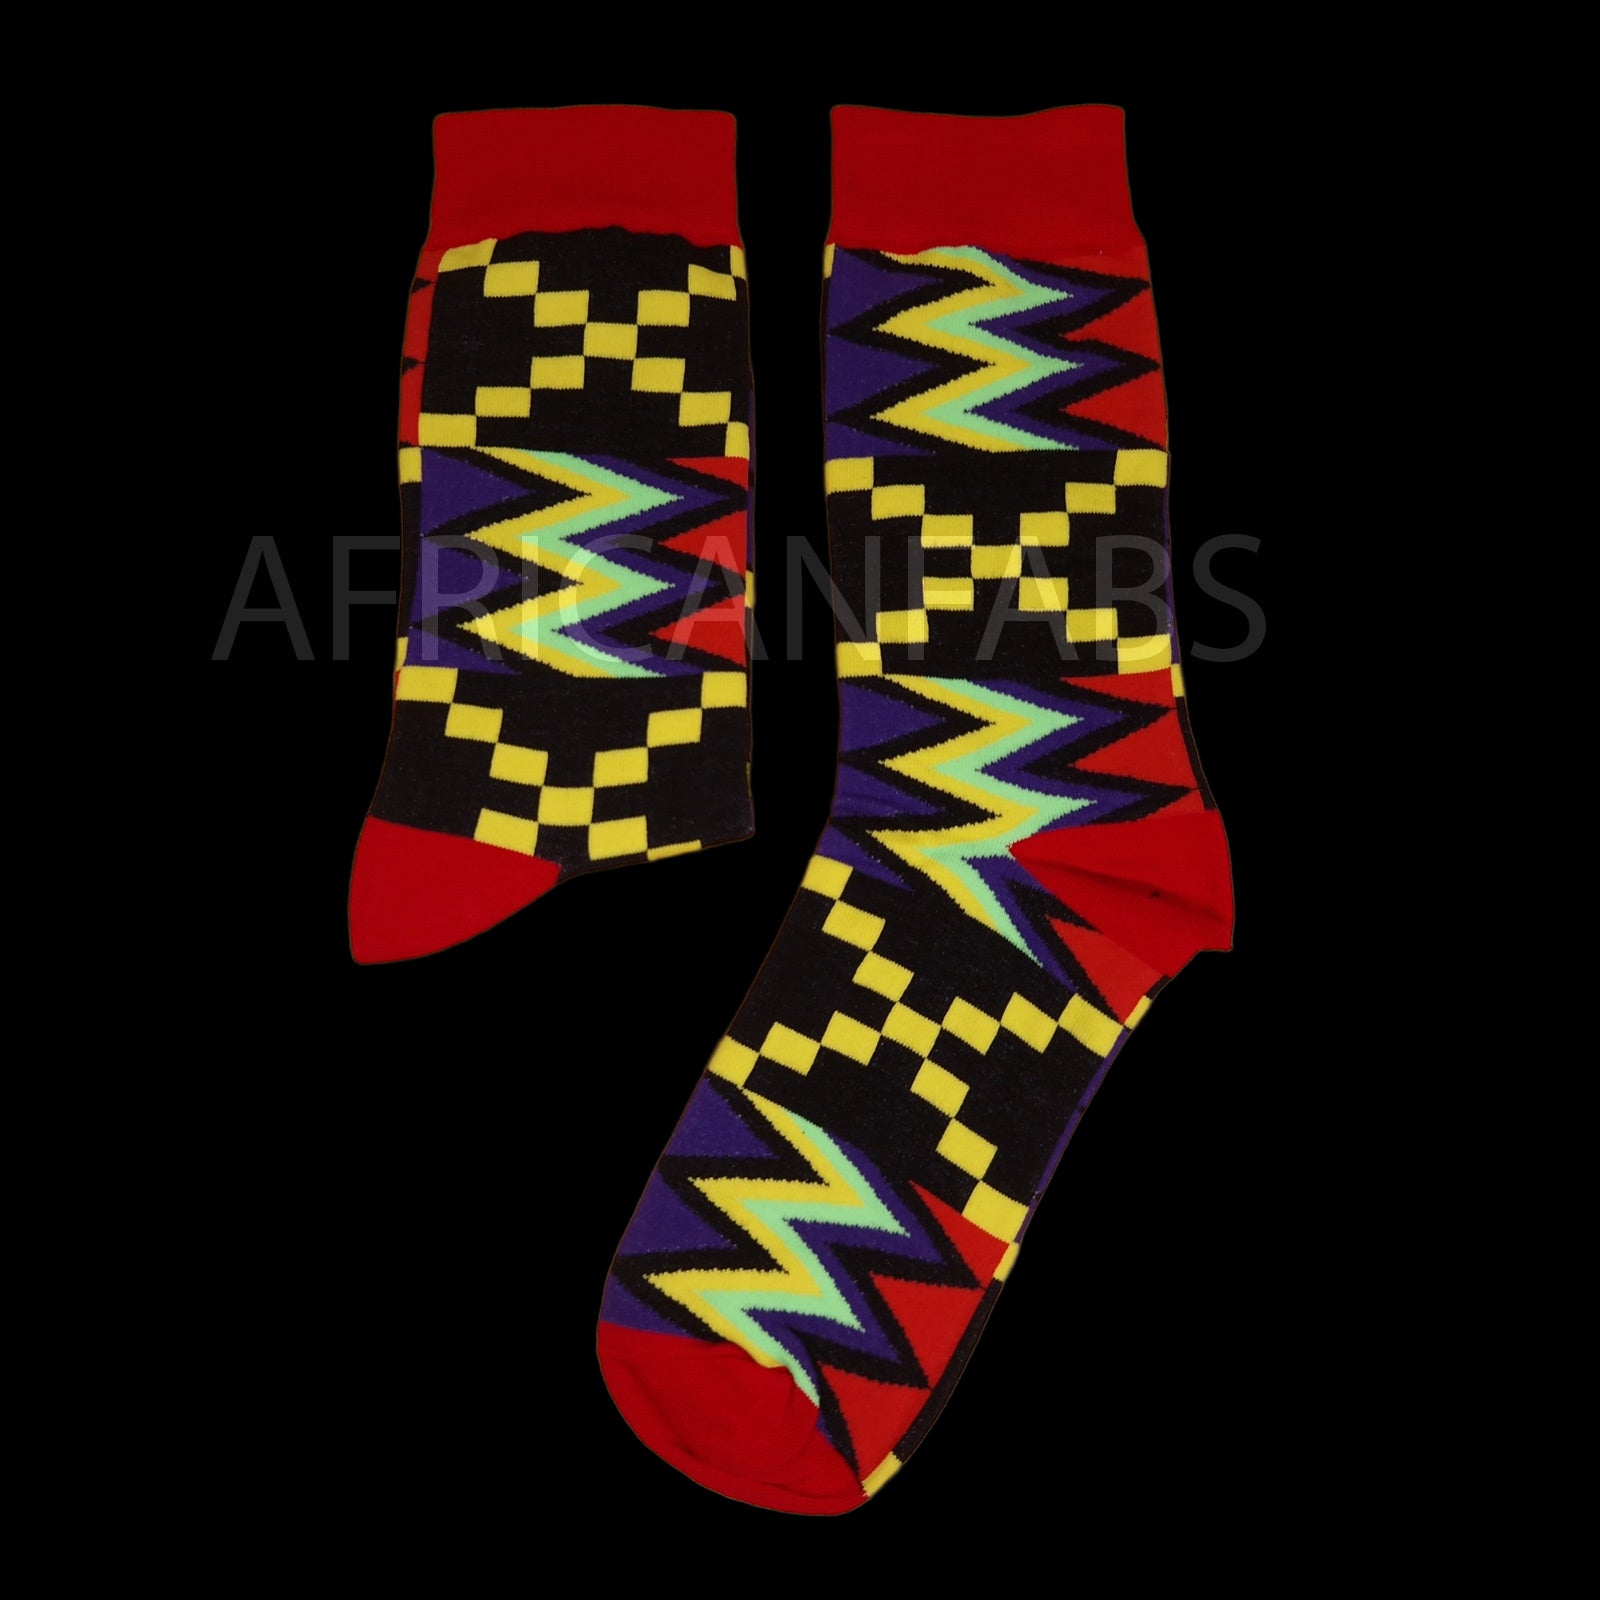 Chaussettes africaines / chaussettes afro / chaussettes kente - Noir / Violet / Rouge